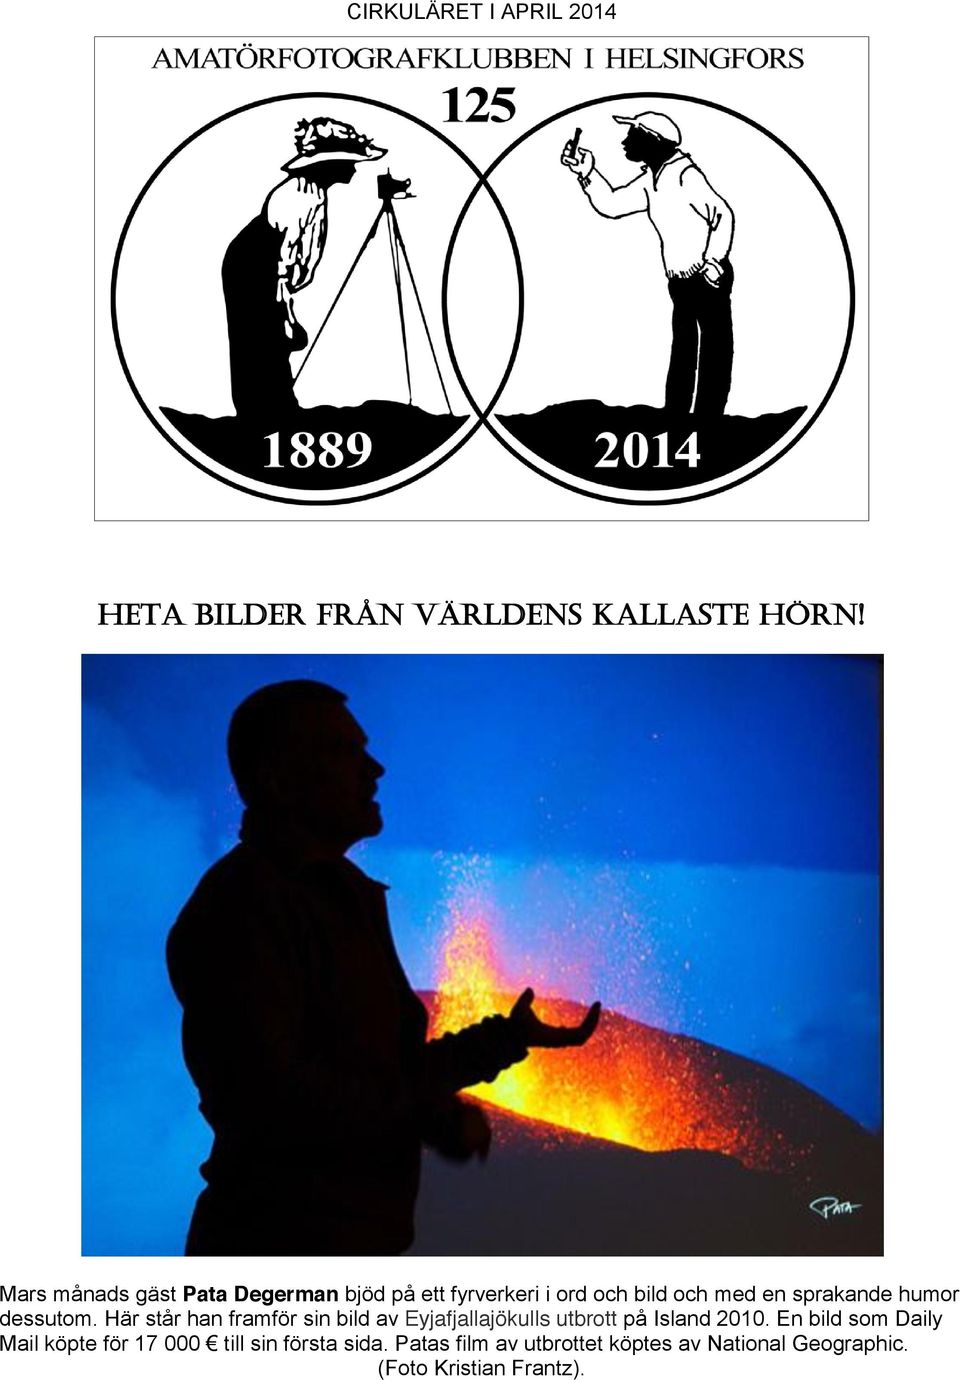 dessutom. Här står han framför sin bild av Eyjafjallajökulls utbrott på Island 2010.